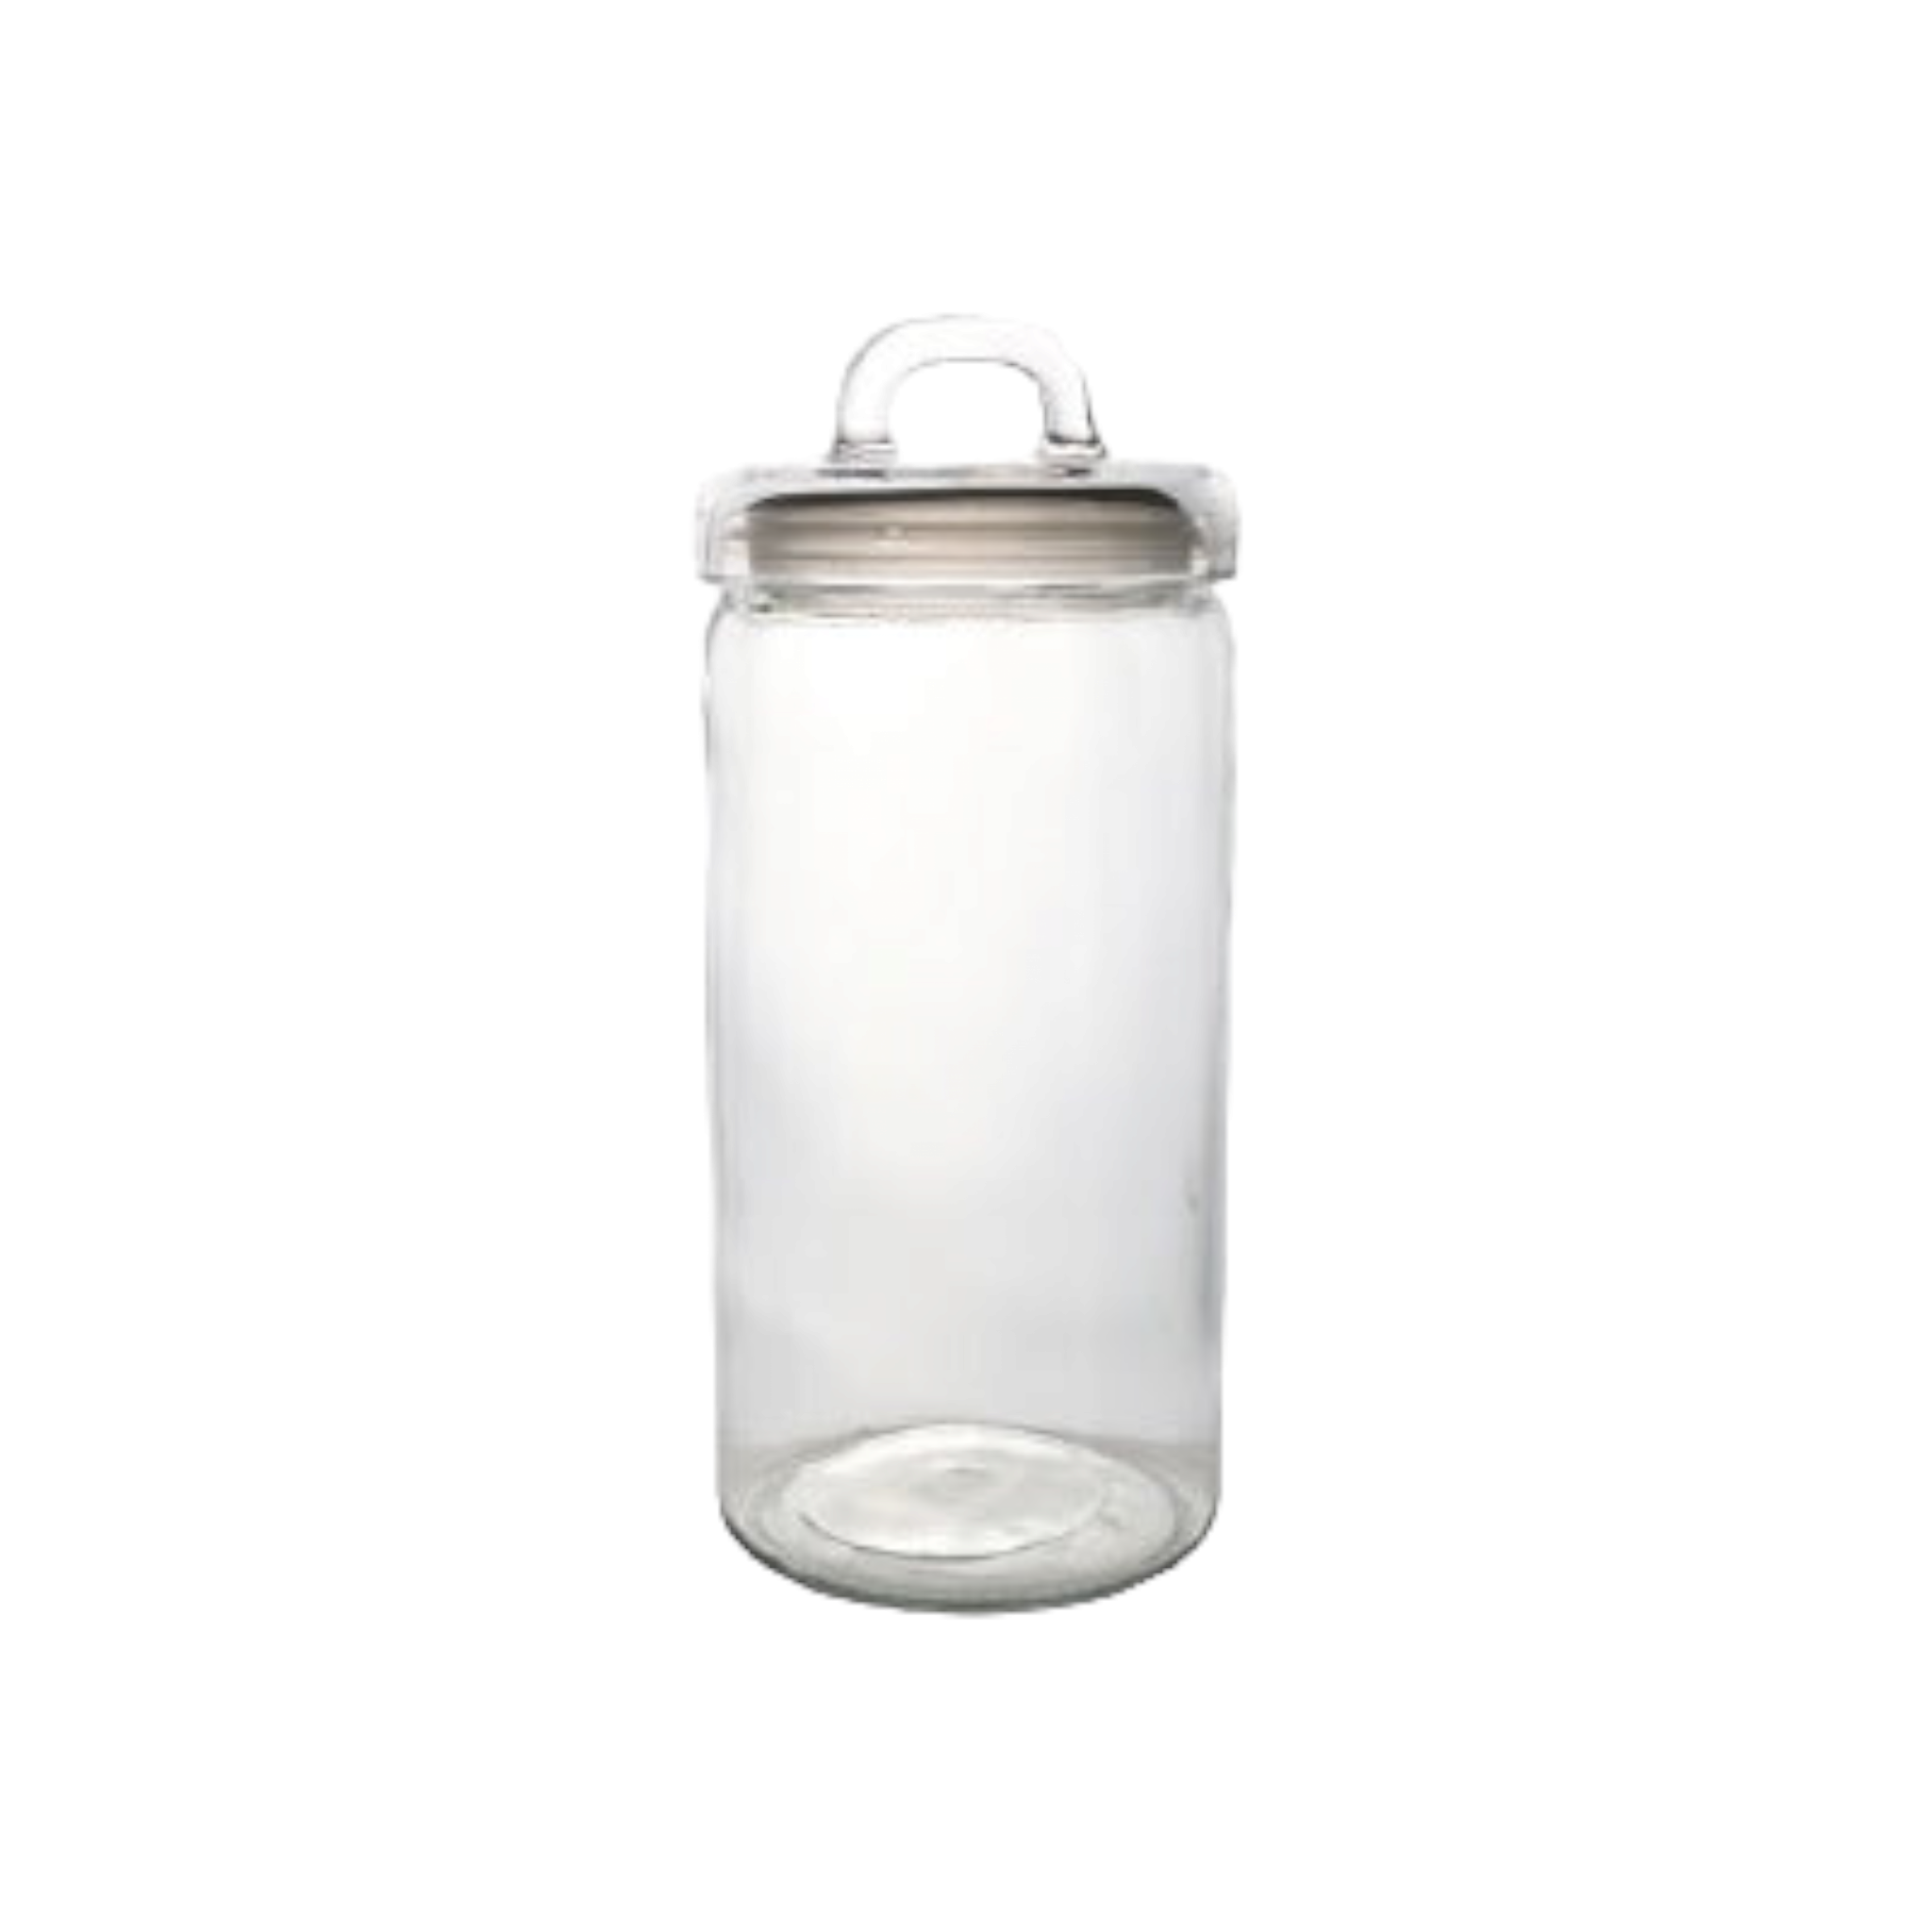 Aqua Canister Glass Jar Round Square Loop Lid 2L 26584